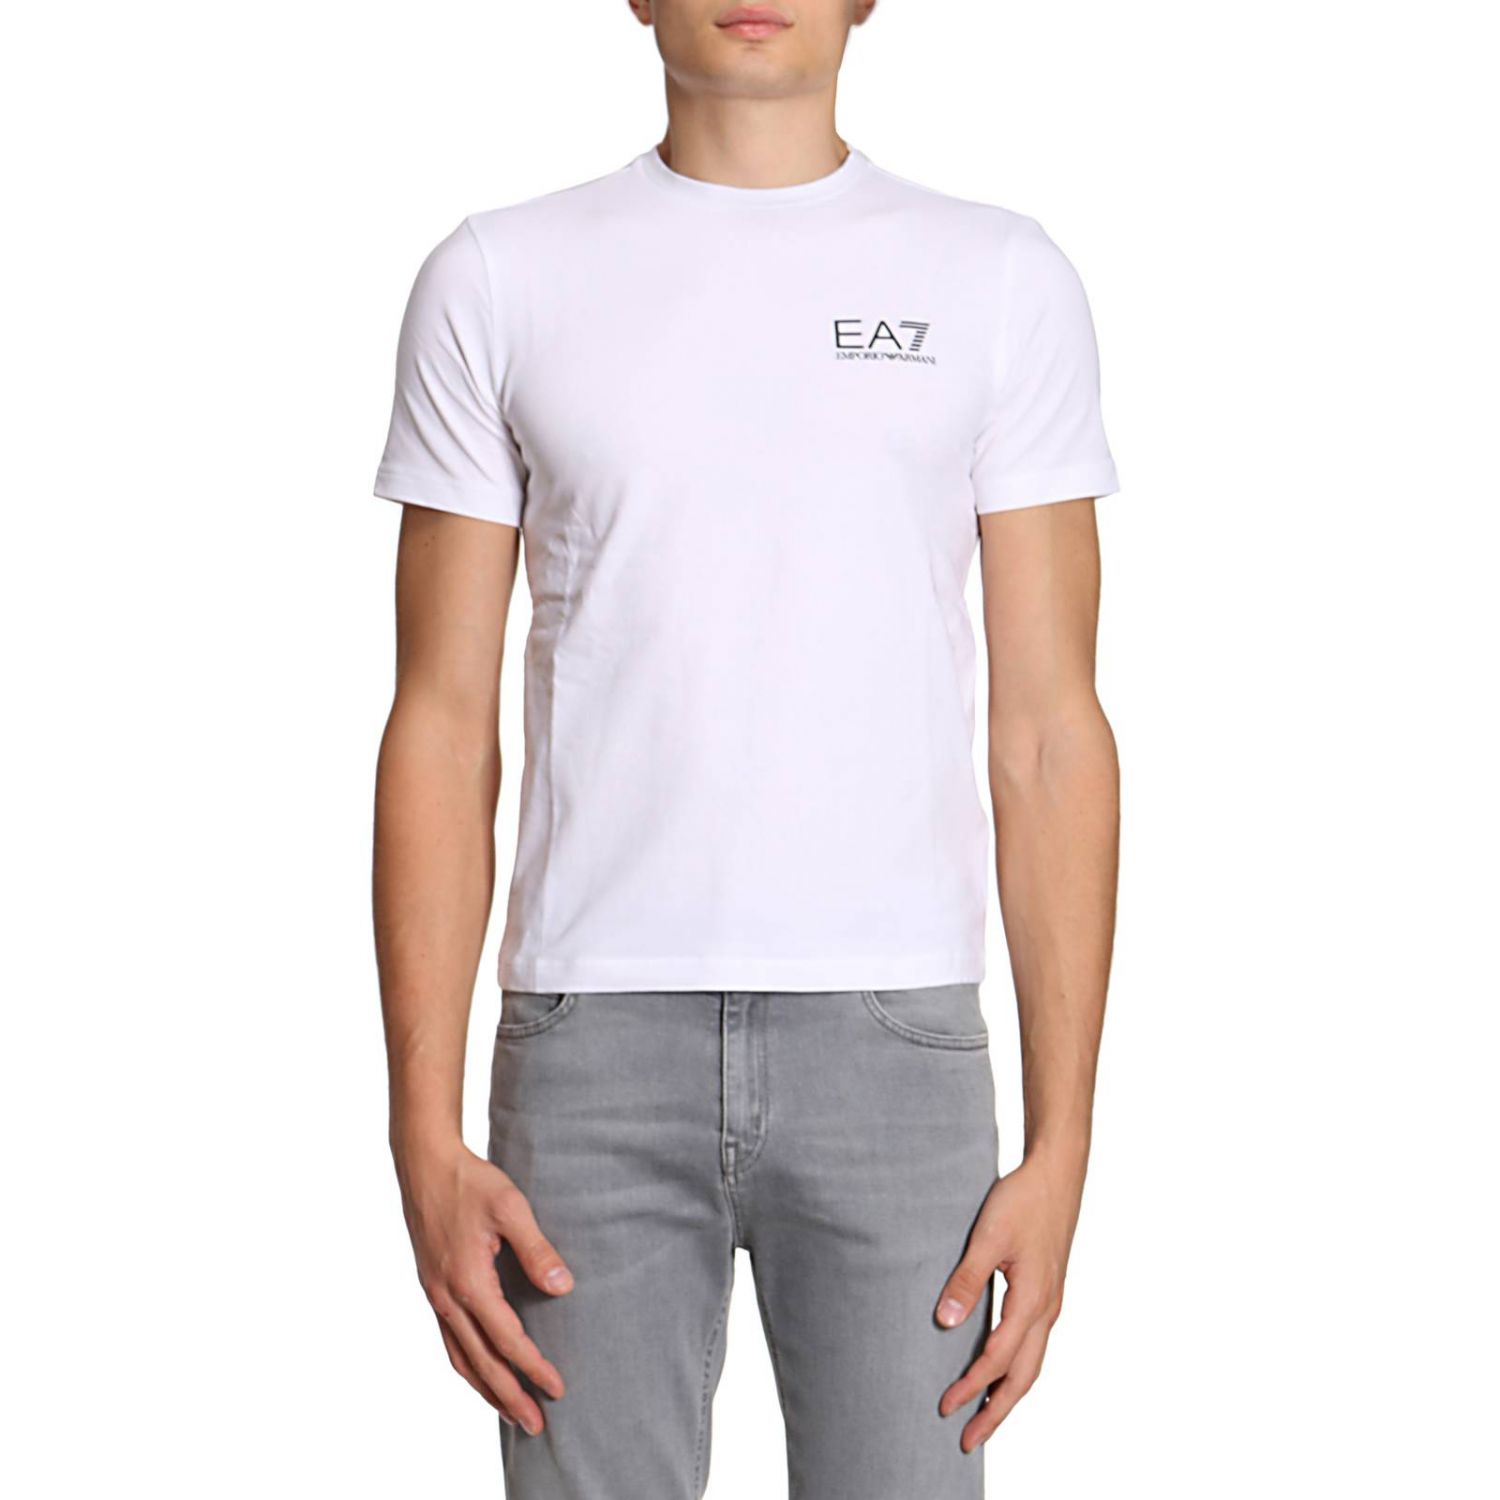 Ea7 Outlet: T-shirt men | T-Shirt Ea7 Men White | T-Shirt Ea7 6YPT52 ...